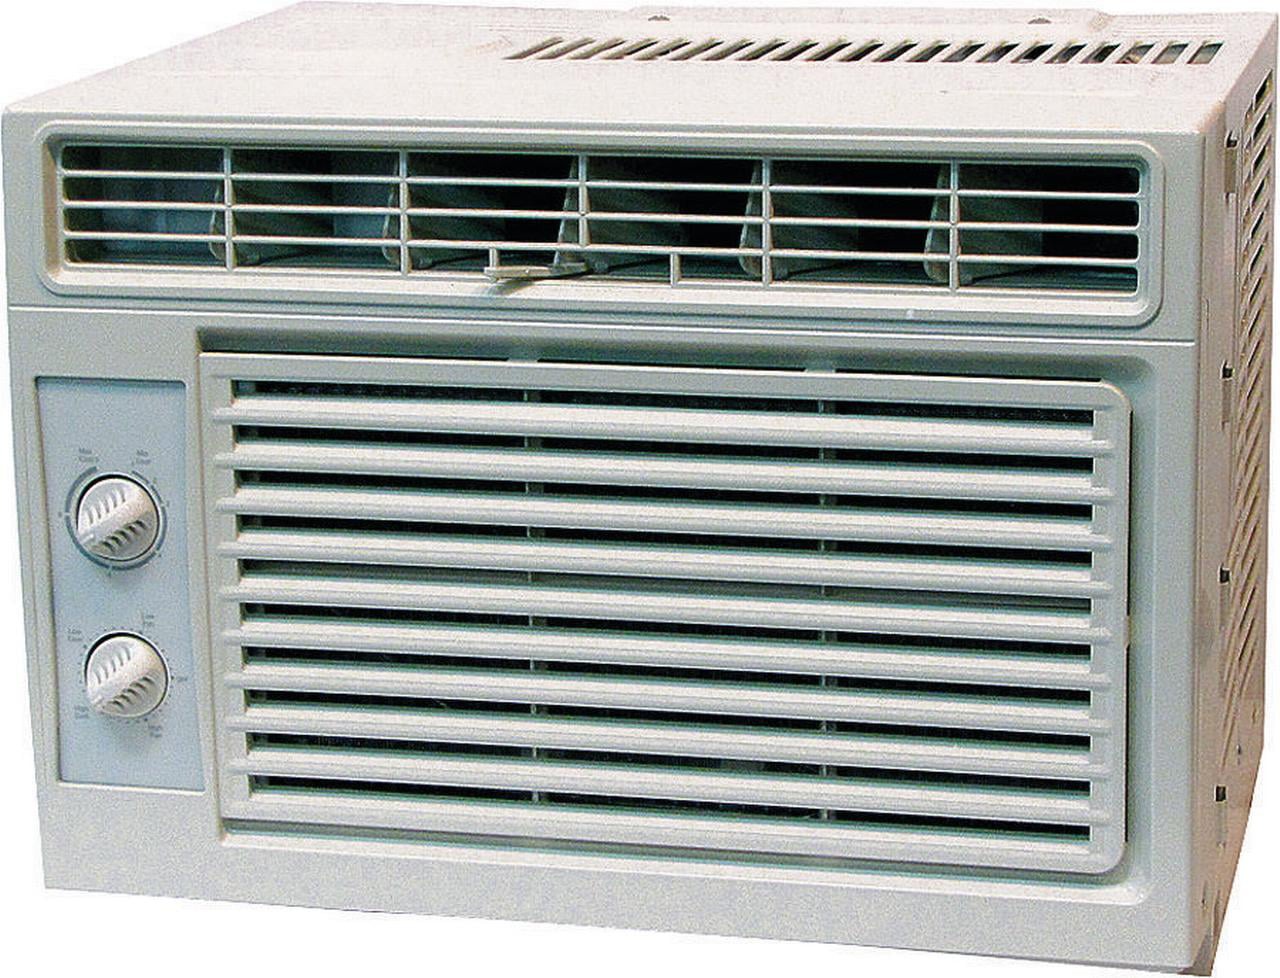 Heat Controller Rg 51j Room Air Conditioner 5000 Btu 123 Cfm 100 150 Sq Ft 1 27 Pt Hr Walmart Com Walmart Com